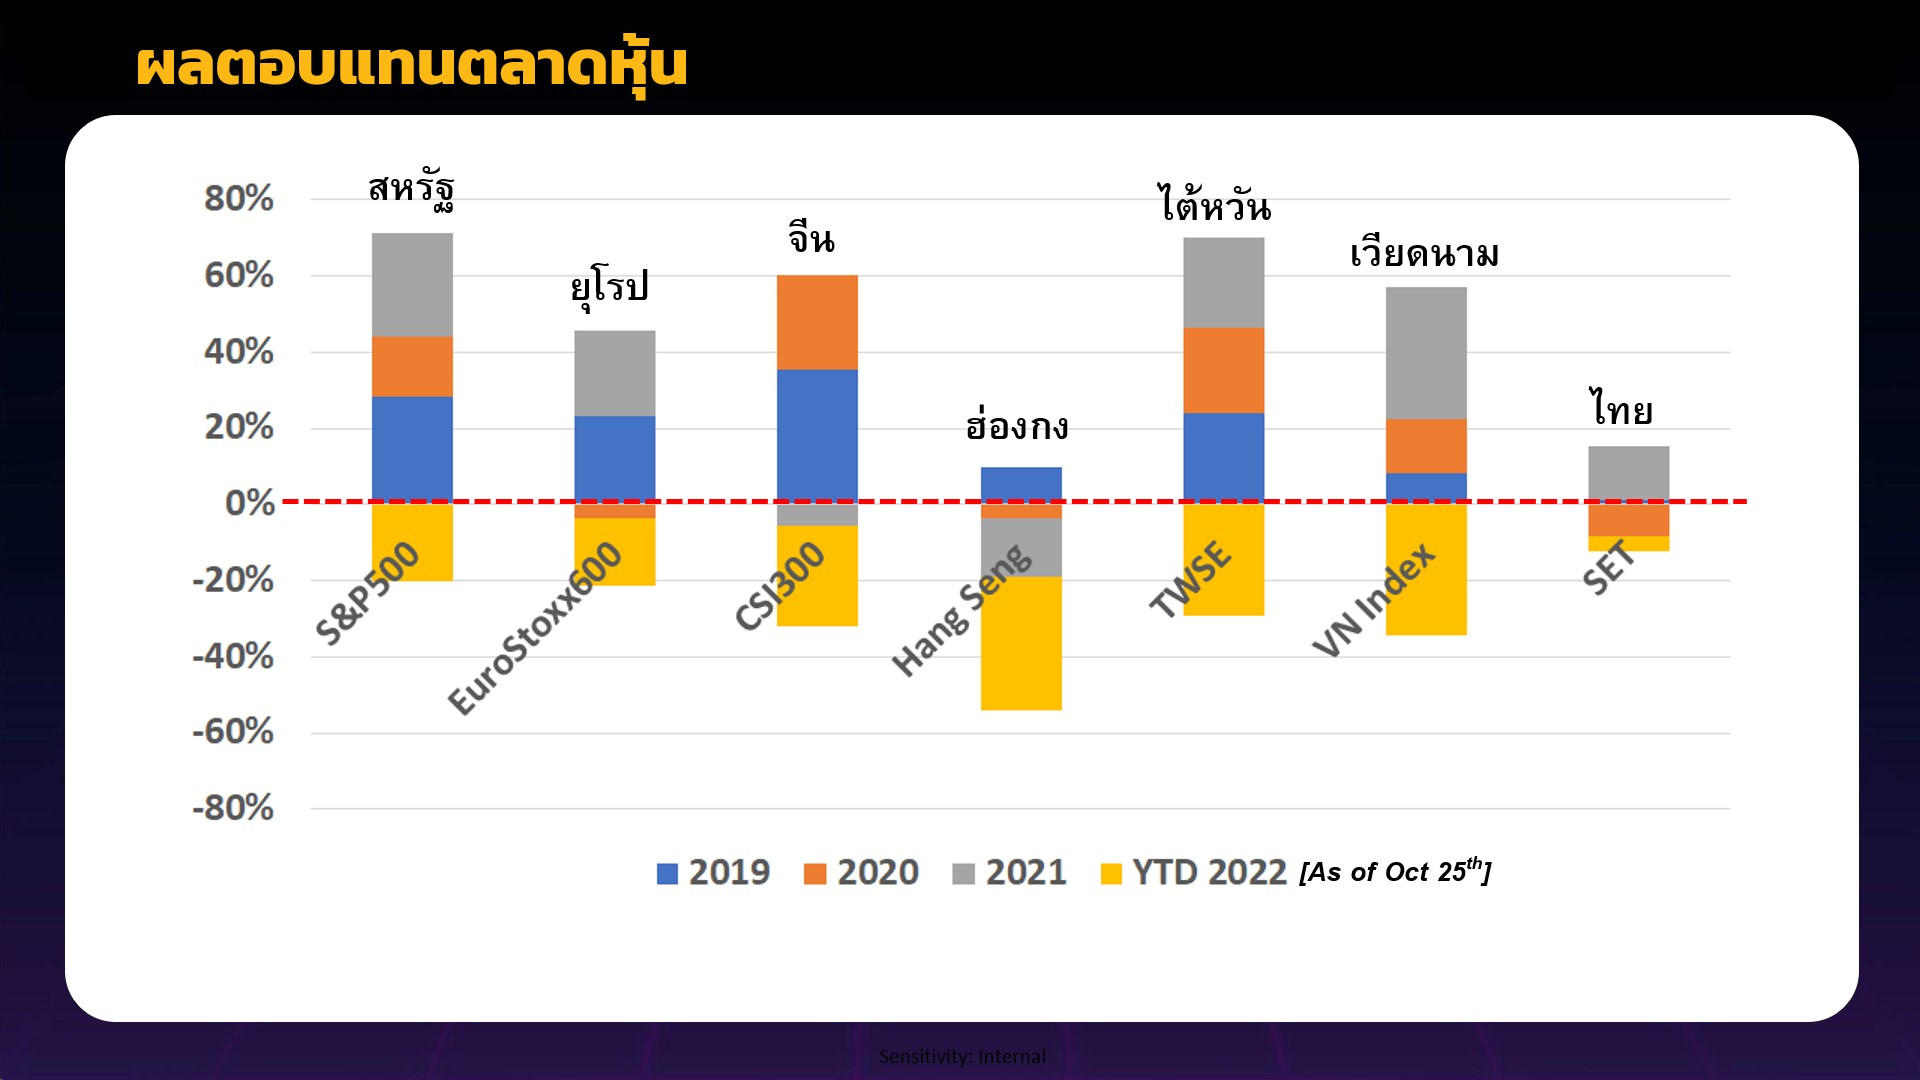 ลงทุนลดหย่อนภาษีเพื่อการออม ในตลาดหุ้นไทย  คว้าโอกาสลงทุนกับการฟื้นตัวของเศรษฐกิจไทยอย่างมั่นคง